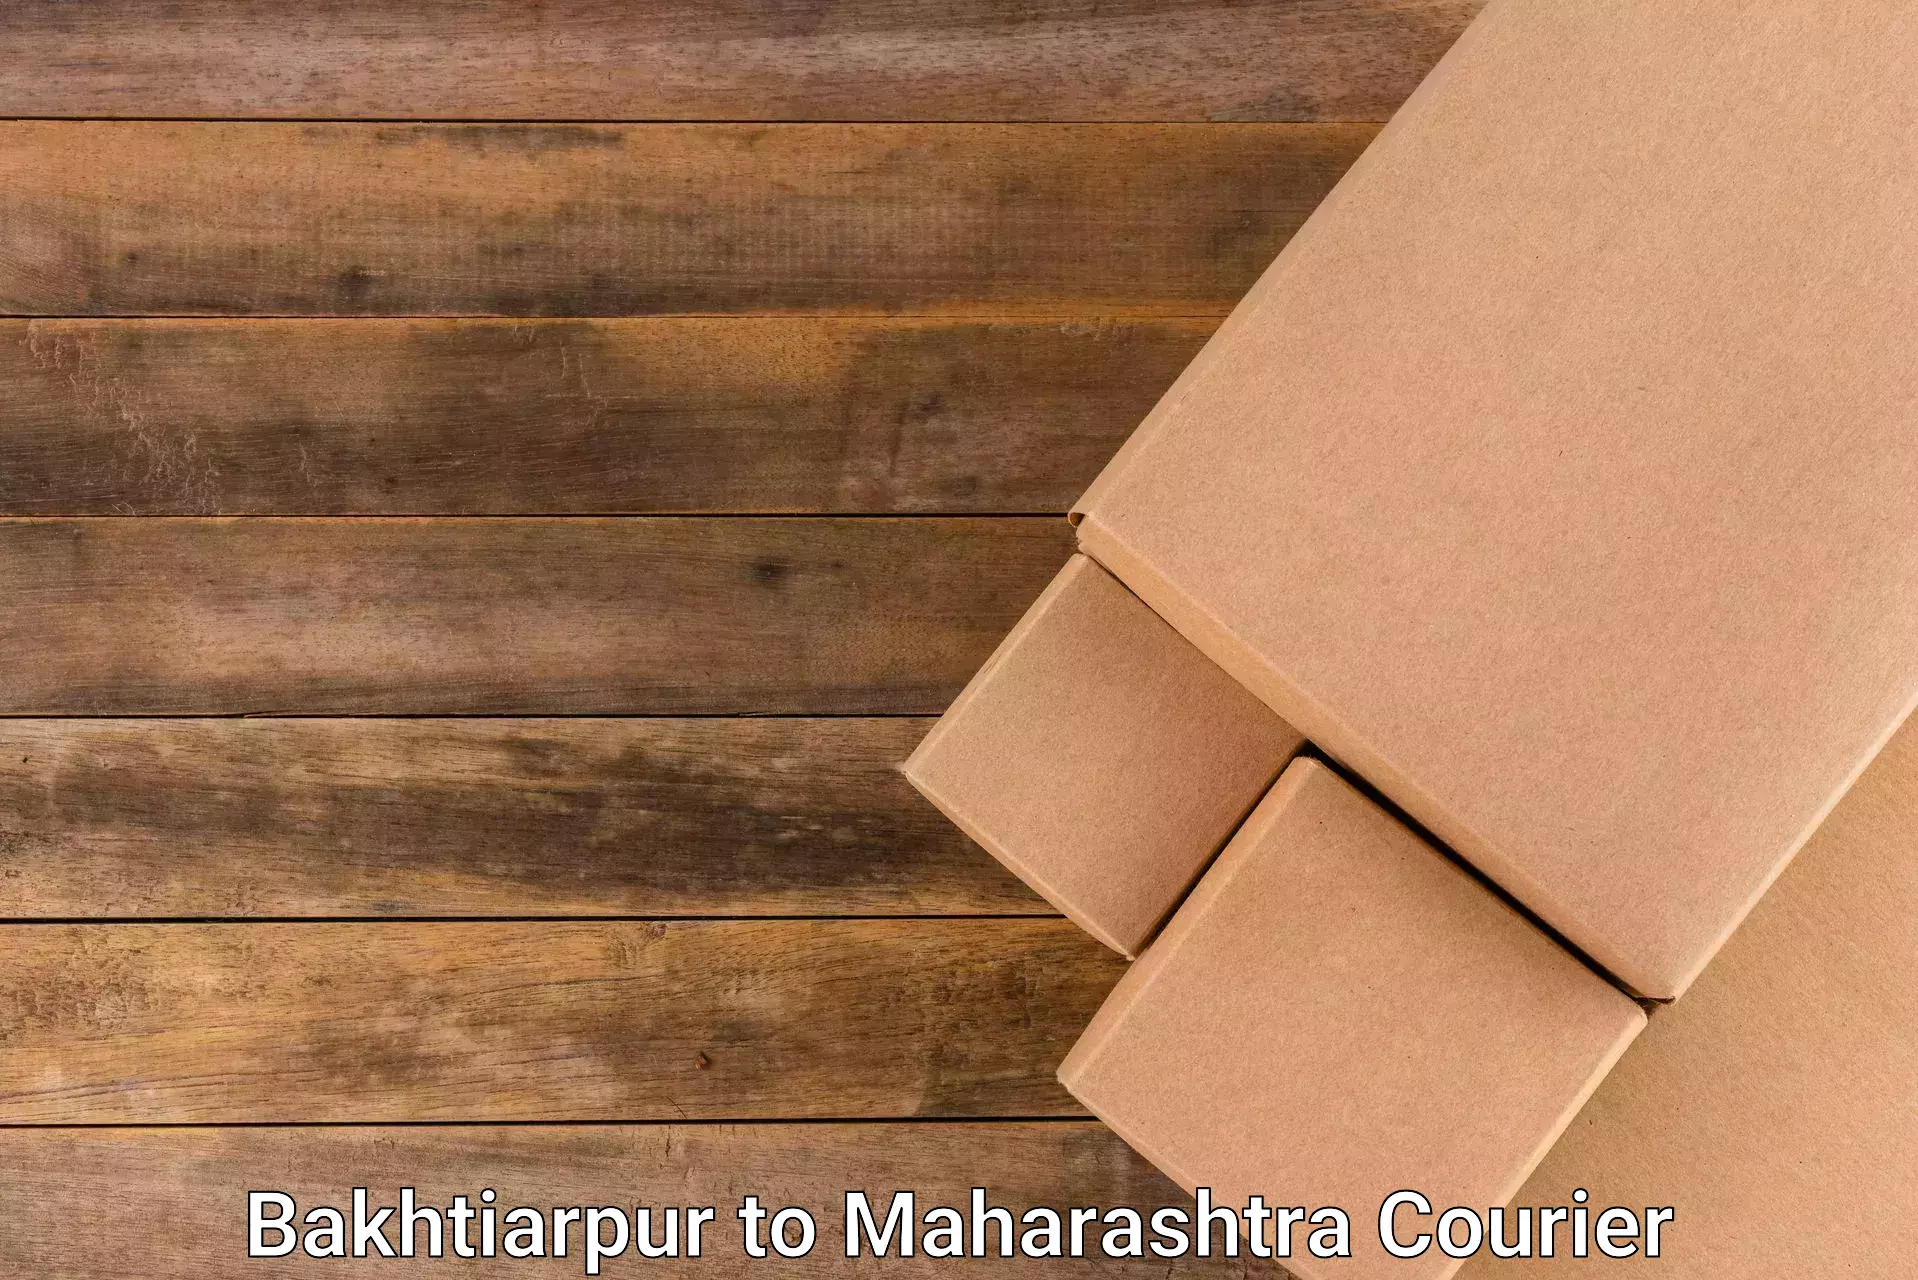 Package forwarding in Bakhtiarpur to Maharashtra